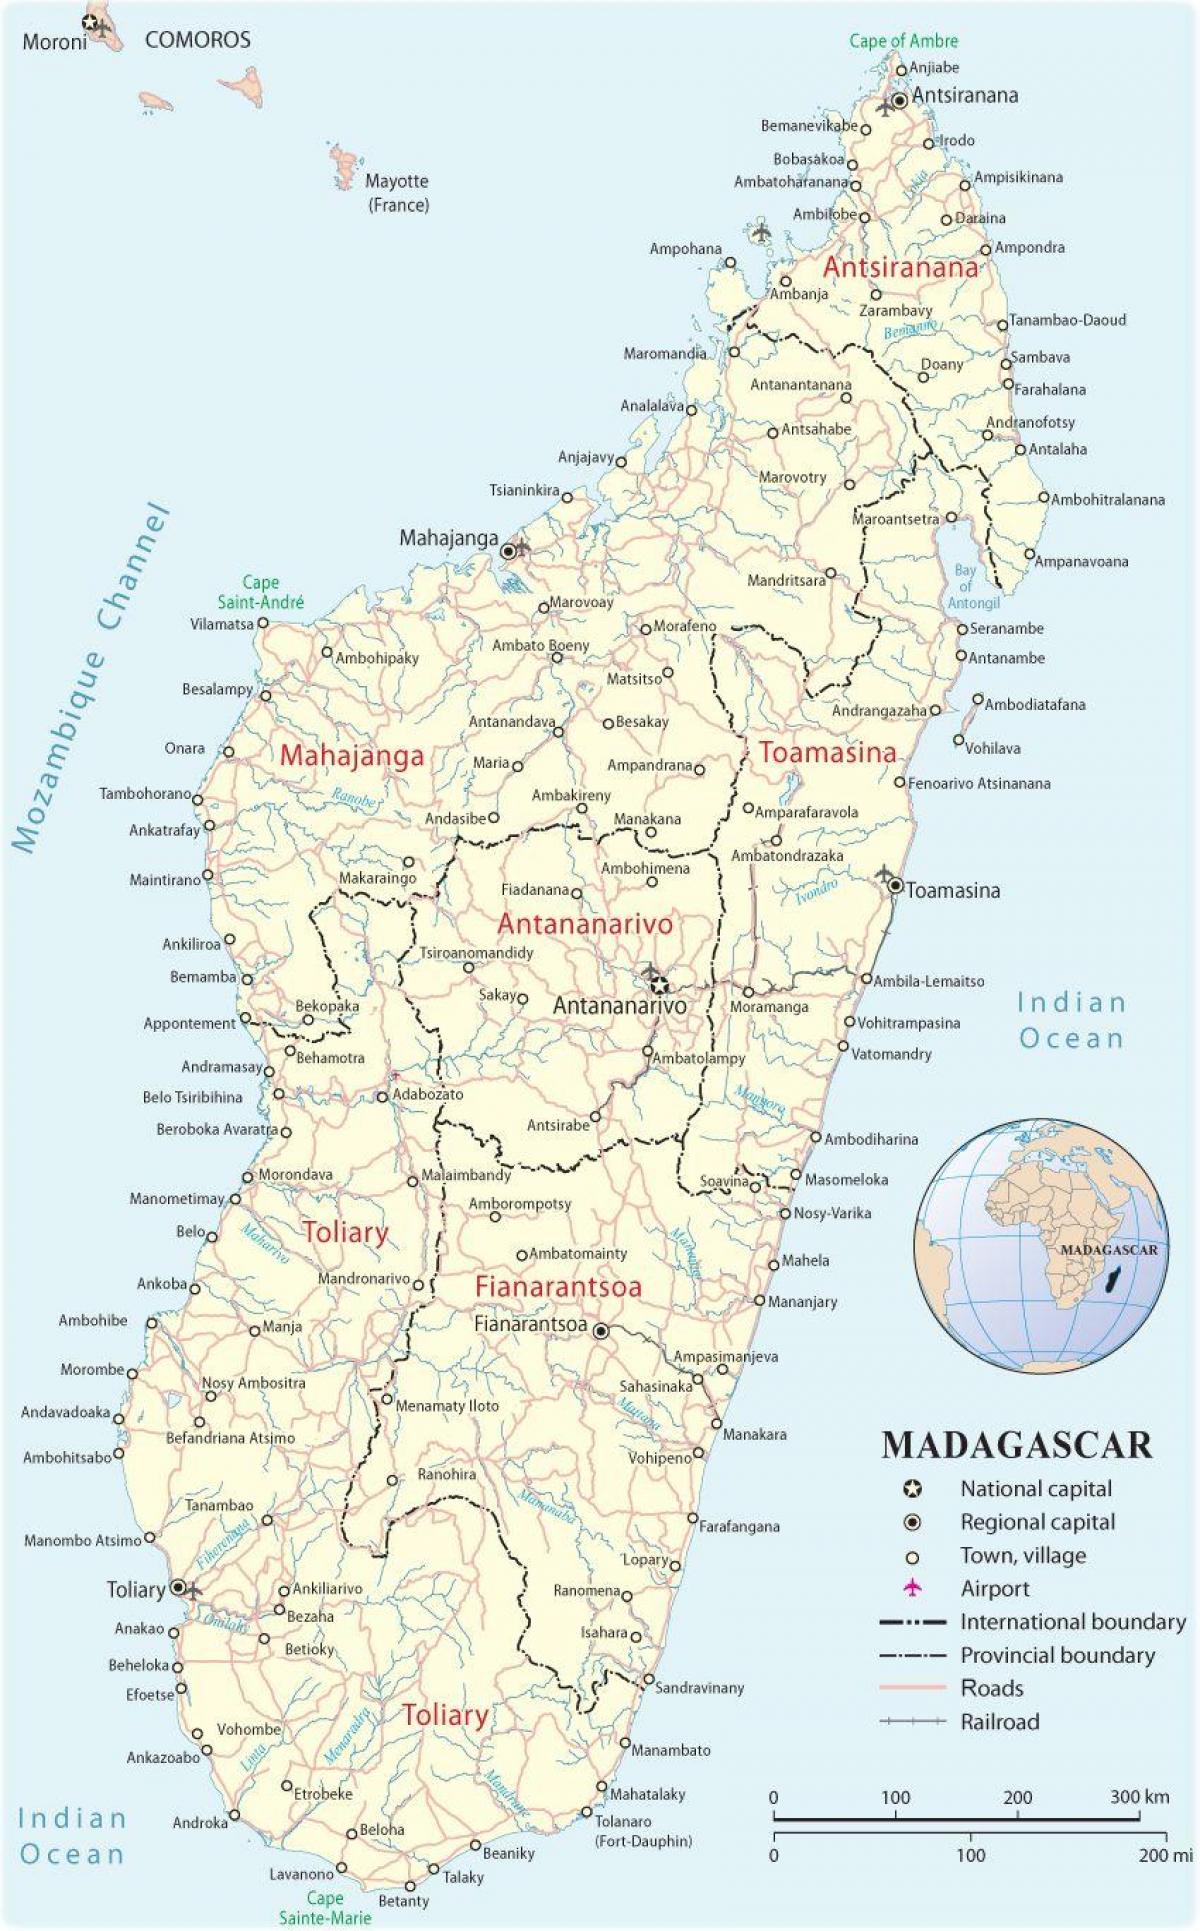 מפה של מדגסקר שדות התעופה.